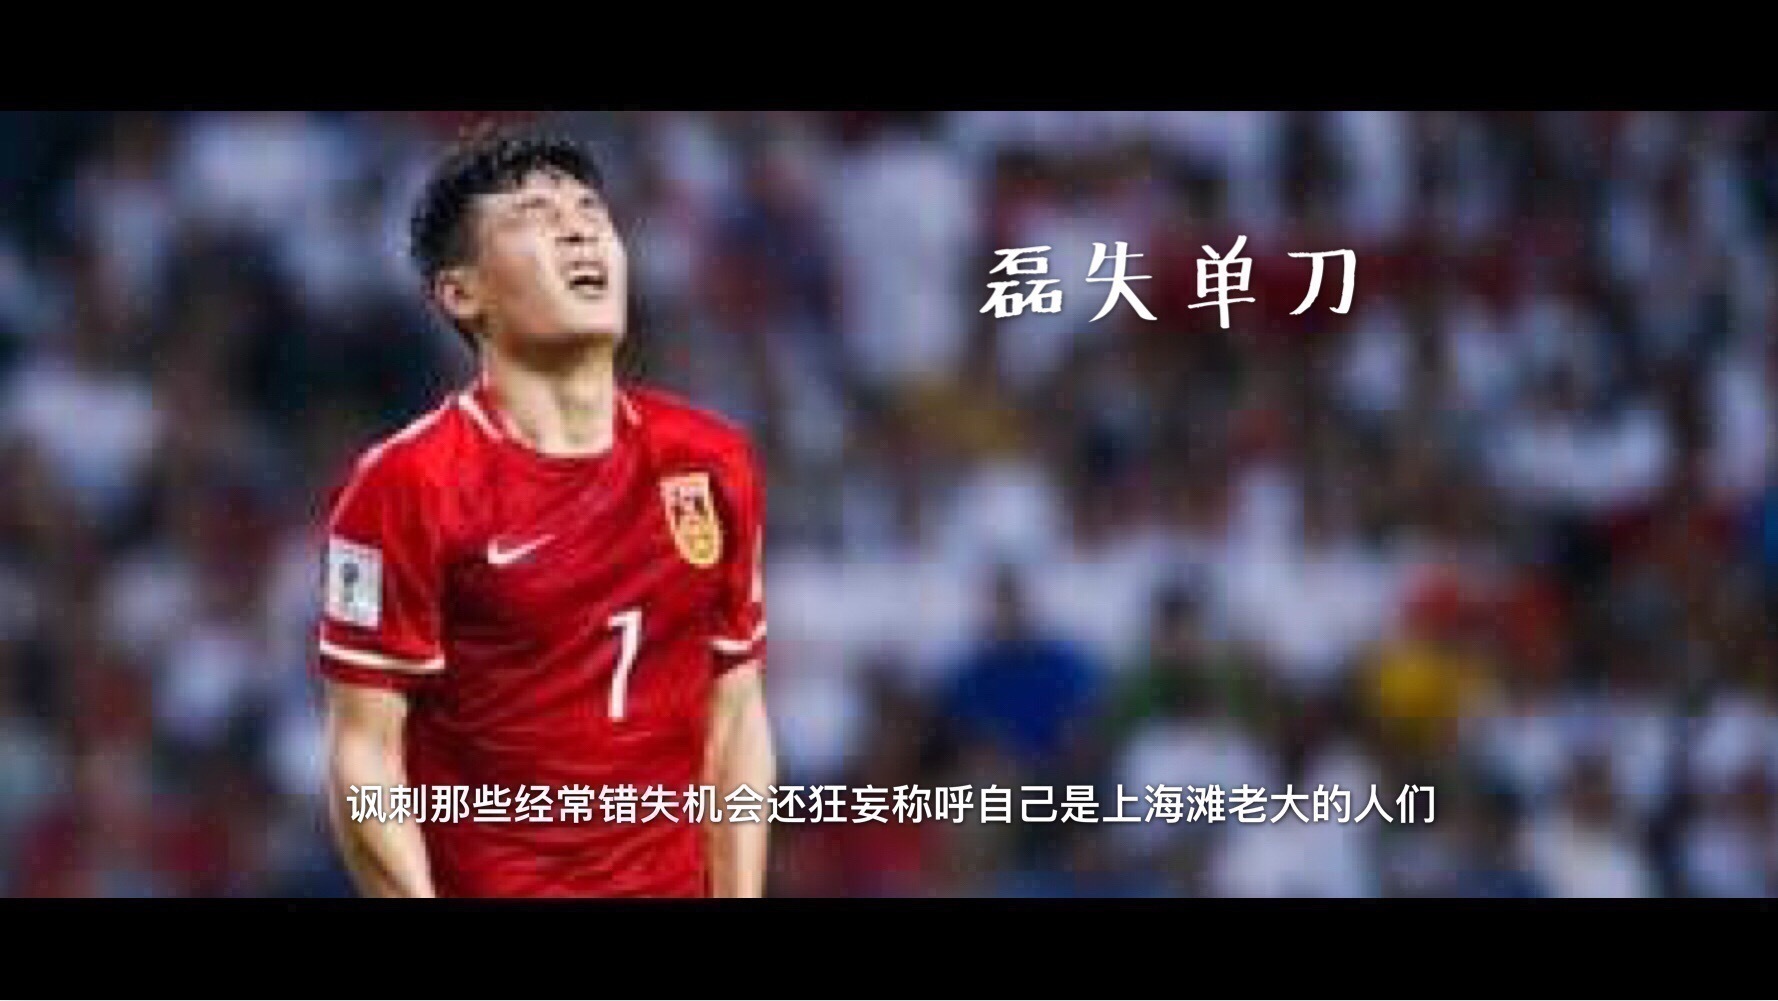 上海滩老大的足球运动员武磊,他曾多次在比赛中面对单刀球却未能得分